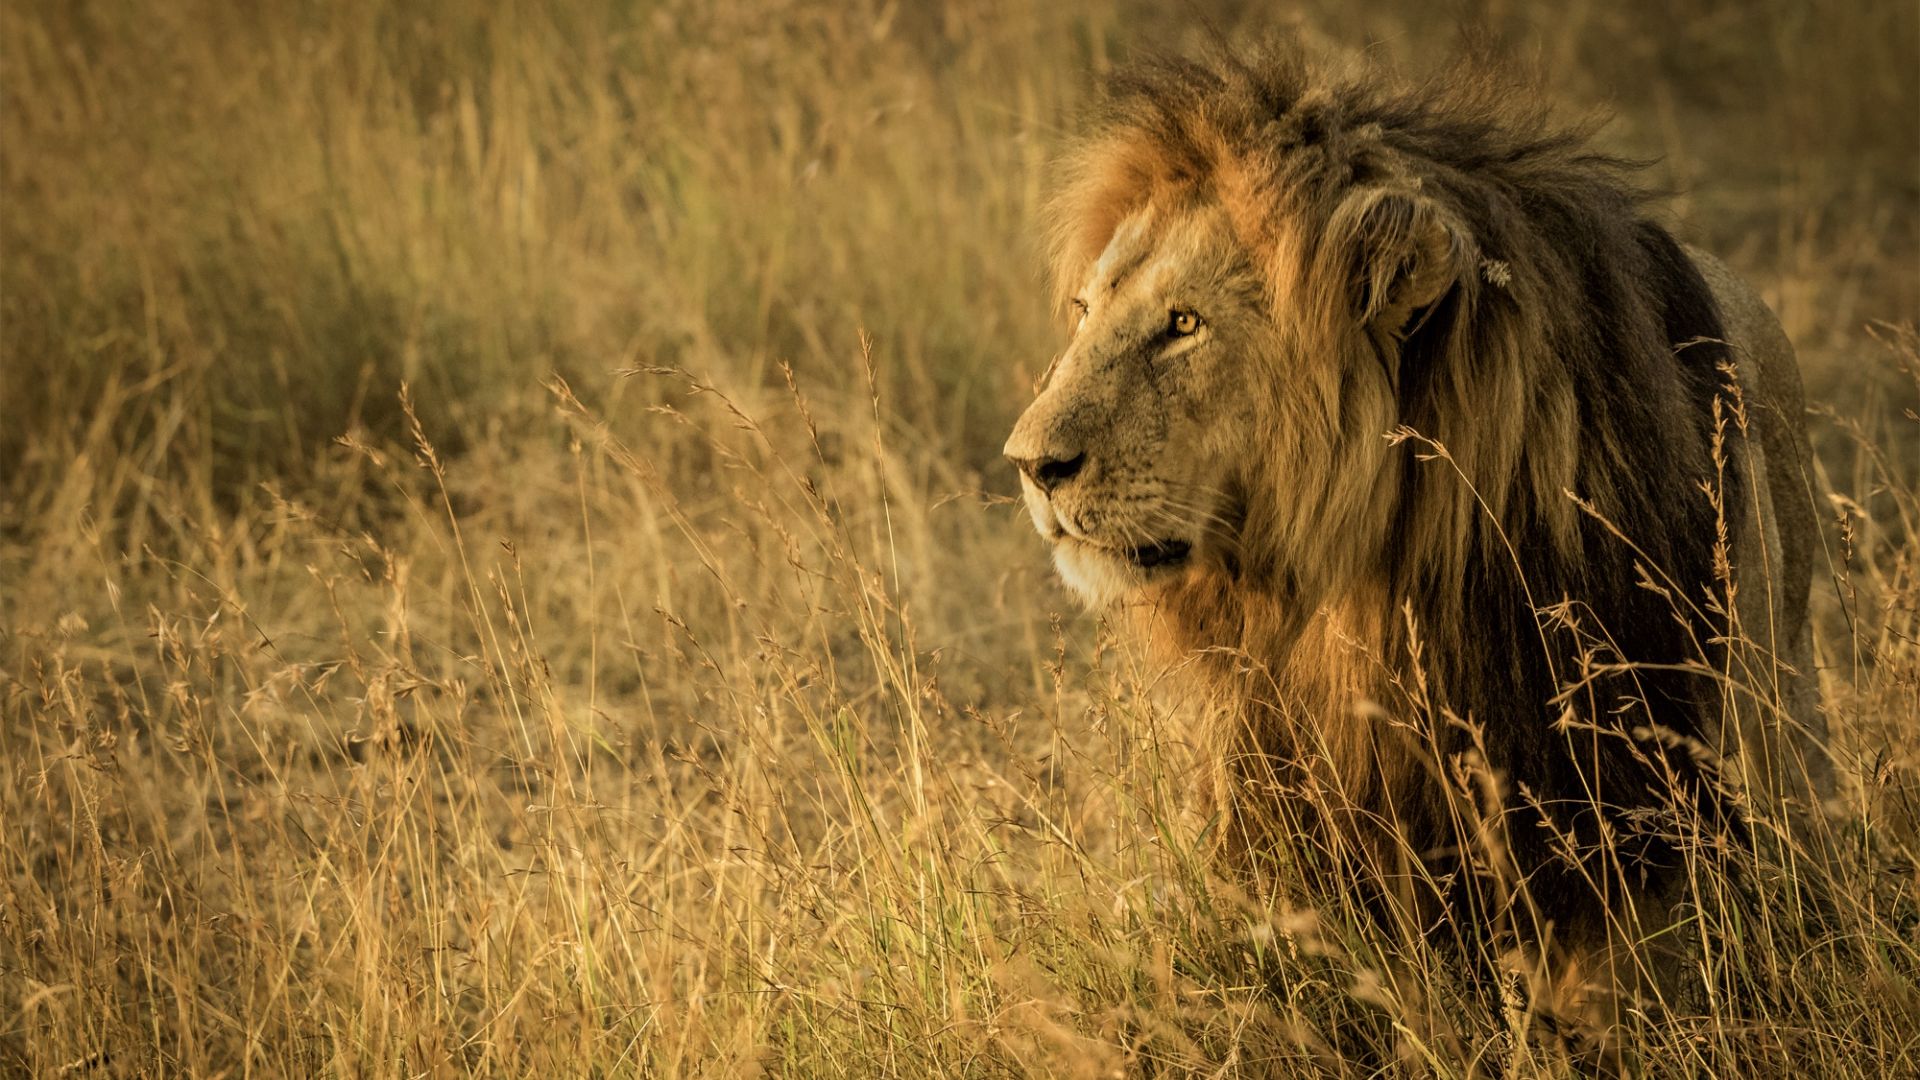 Wallpaper Lion ready for hunt, beast, predator